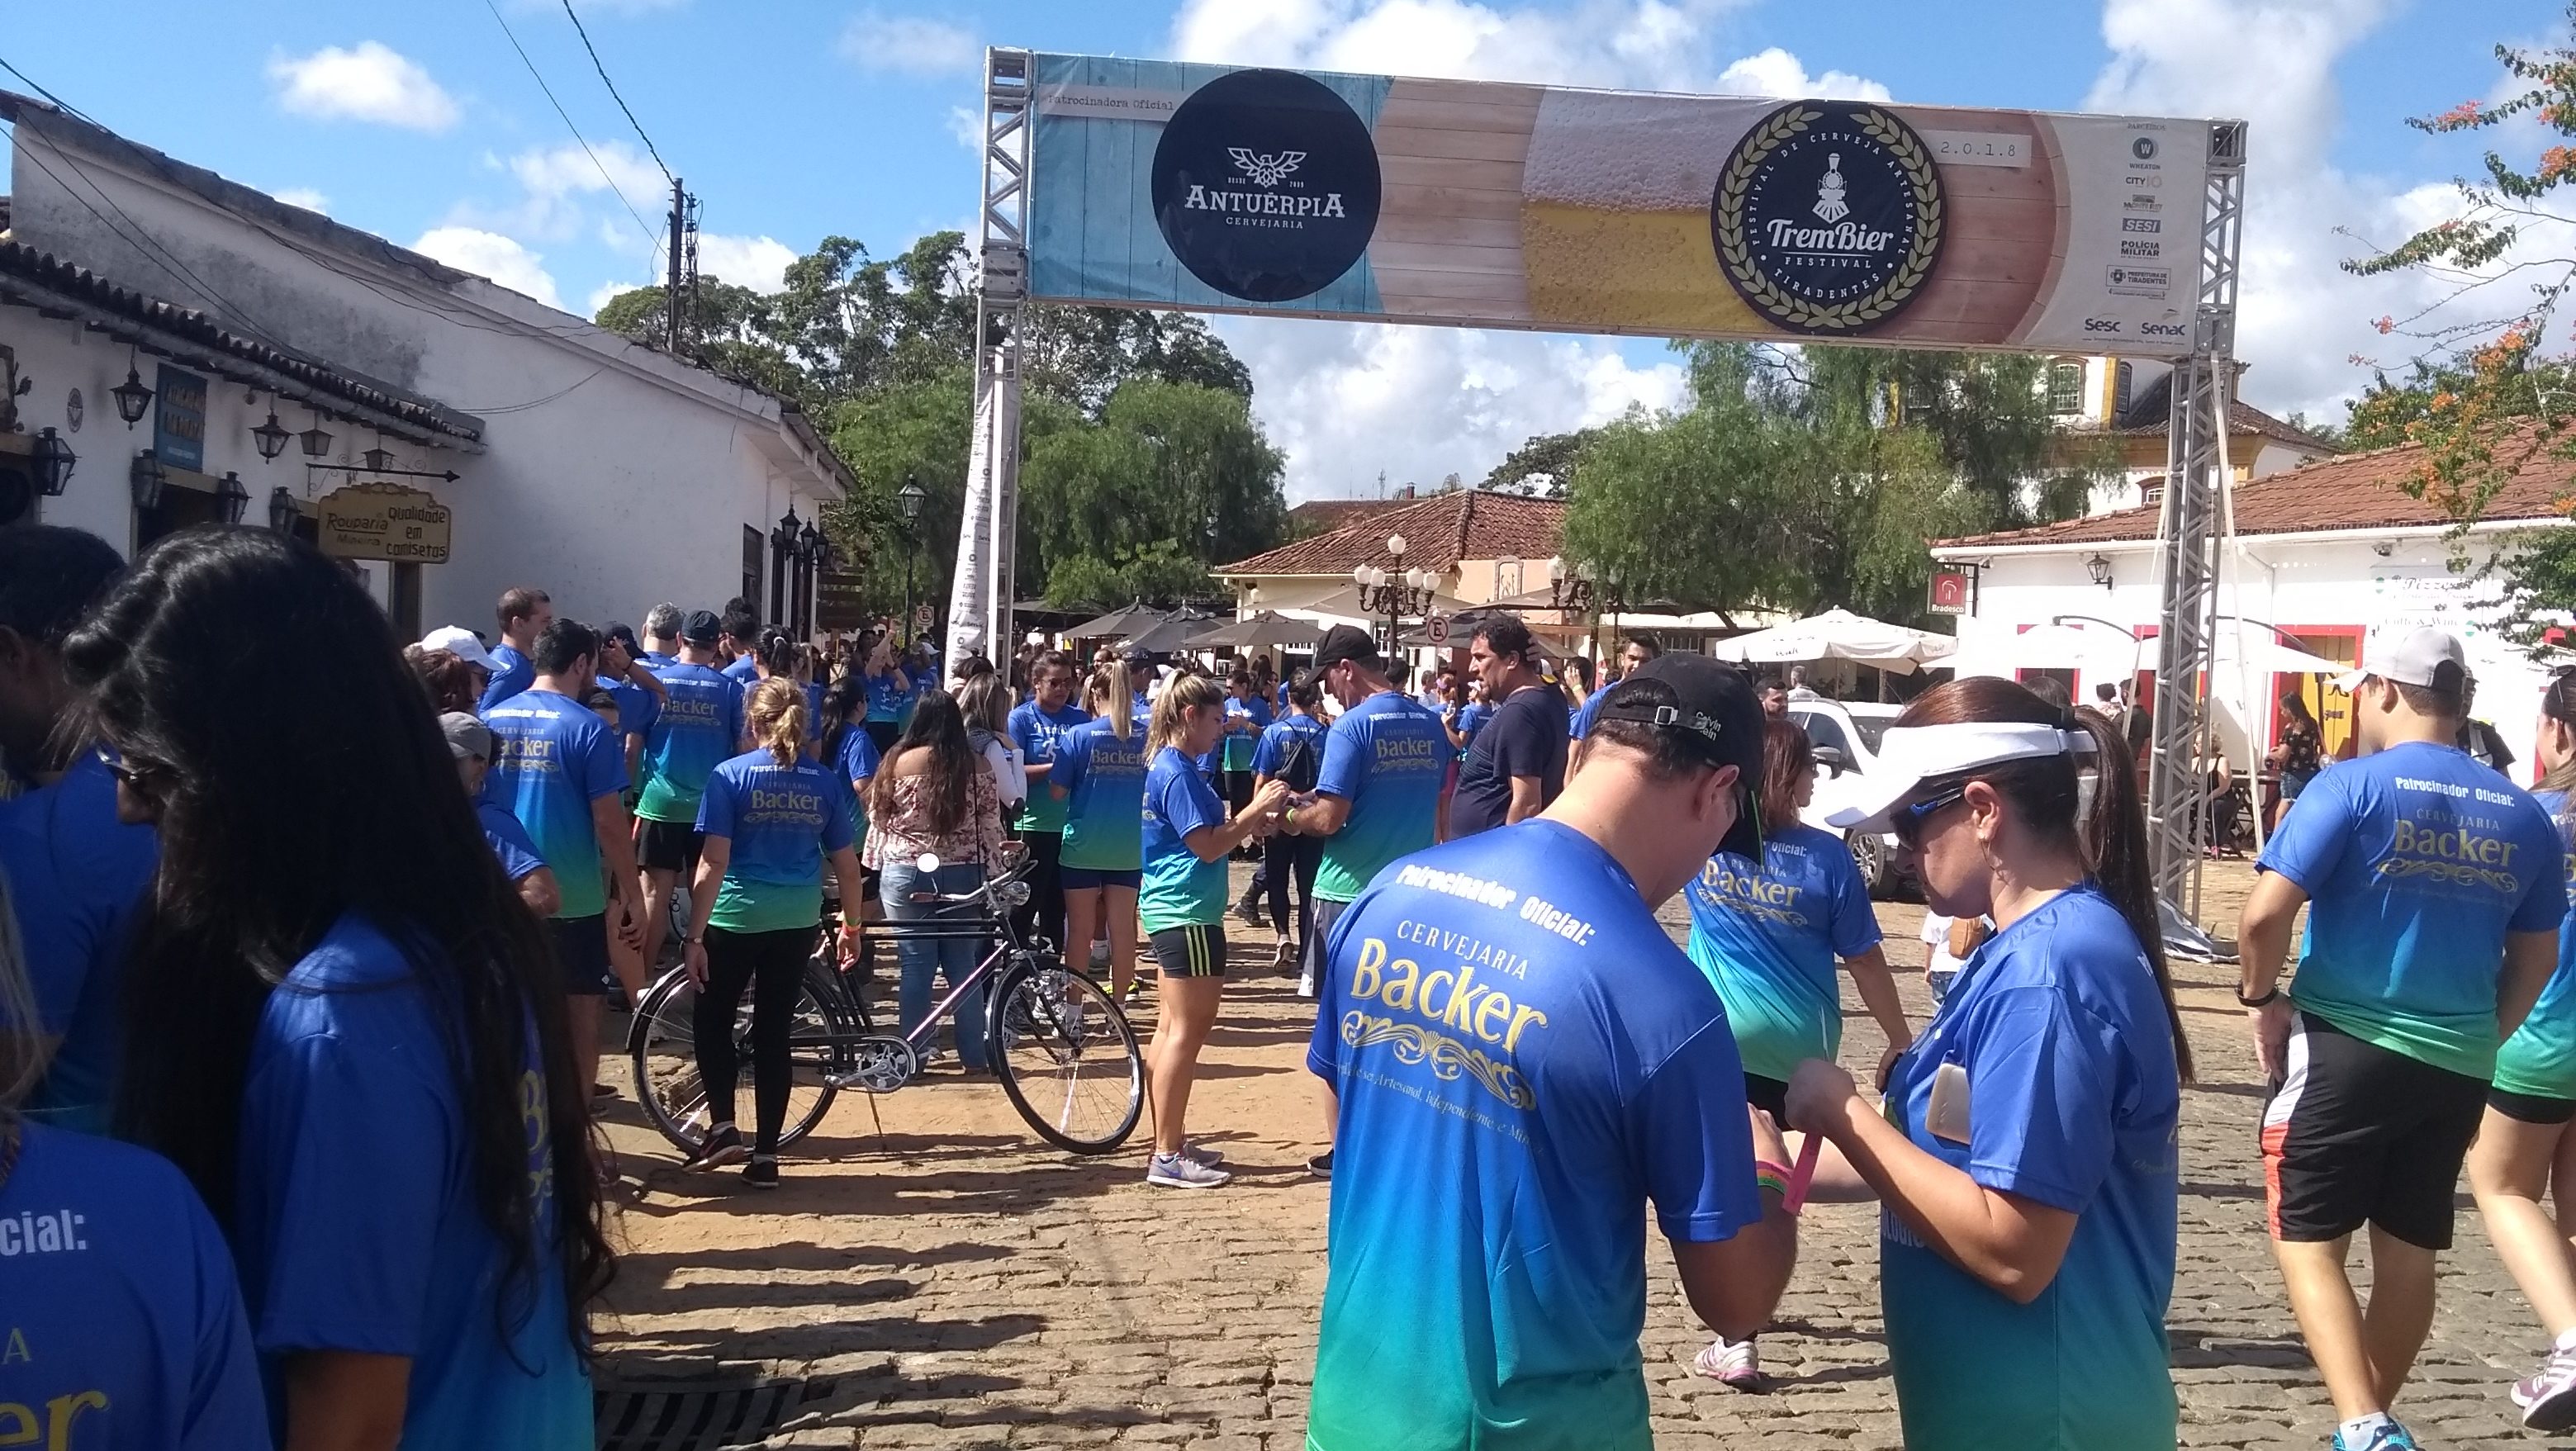 TremBier realiza 1ª corrida alcoológica em Tiradentes